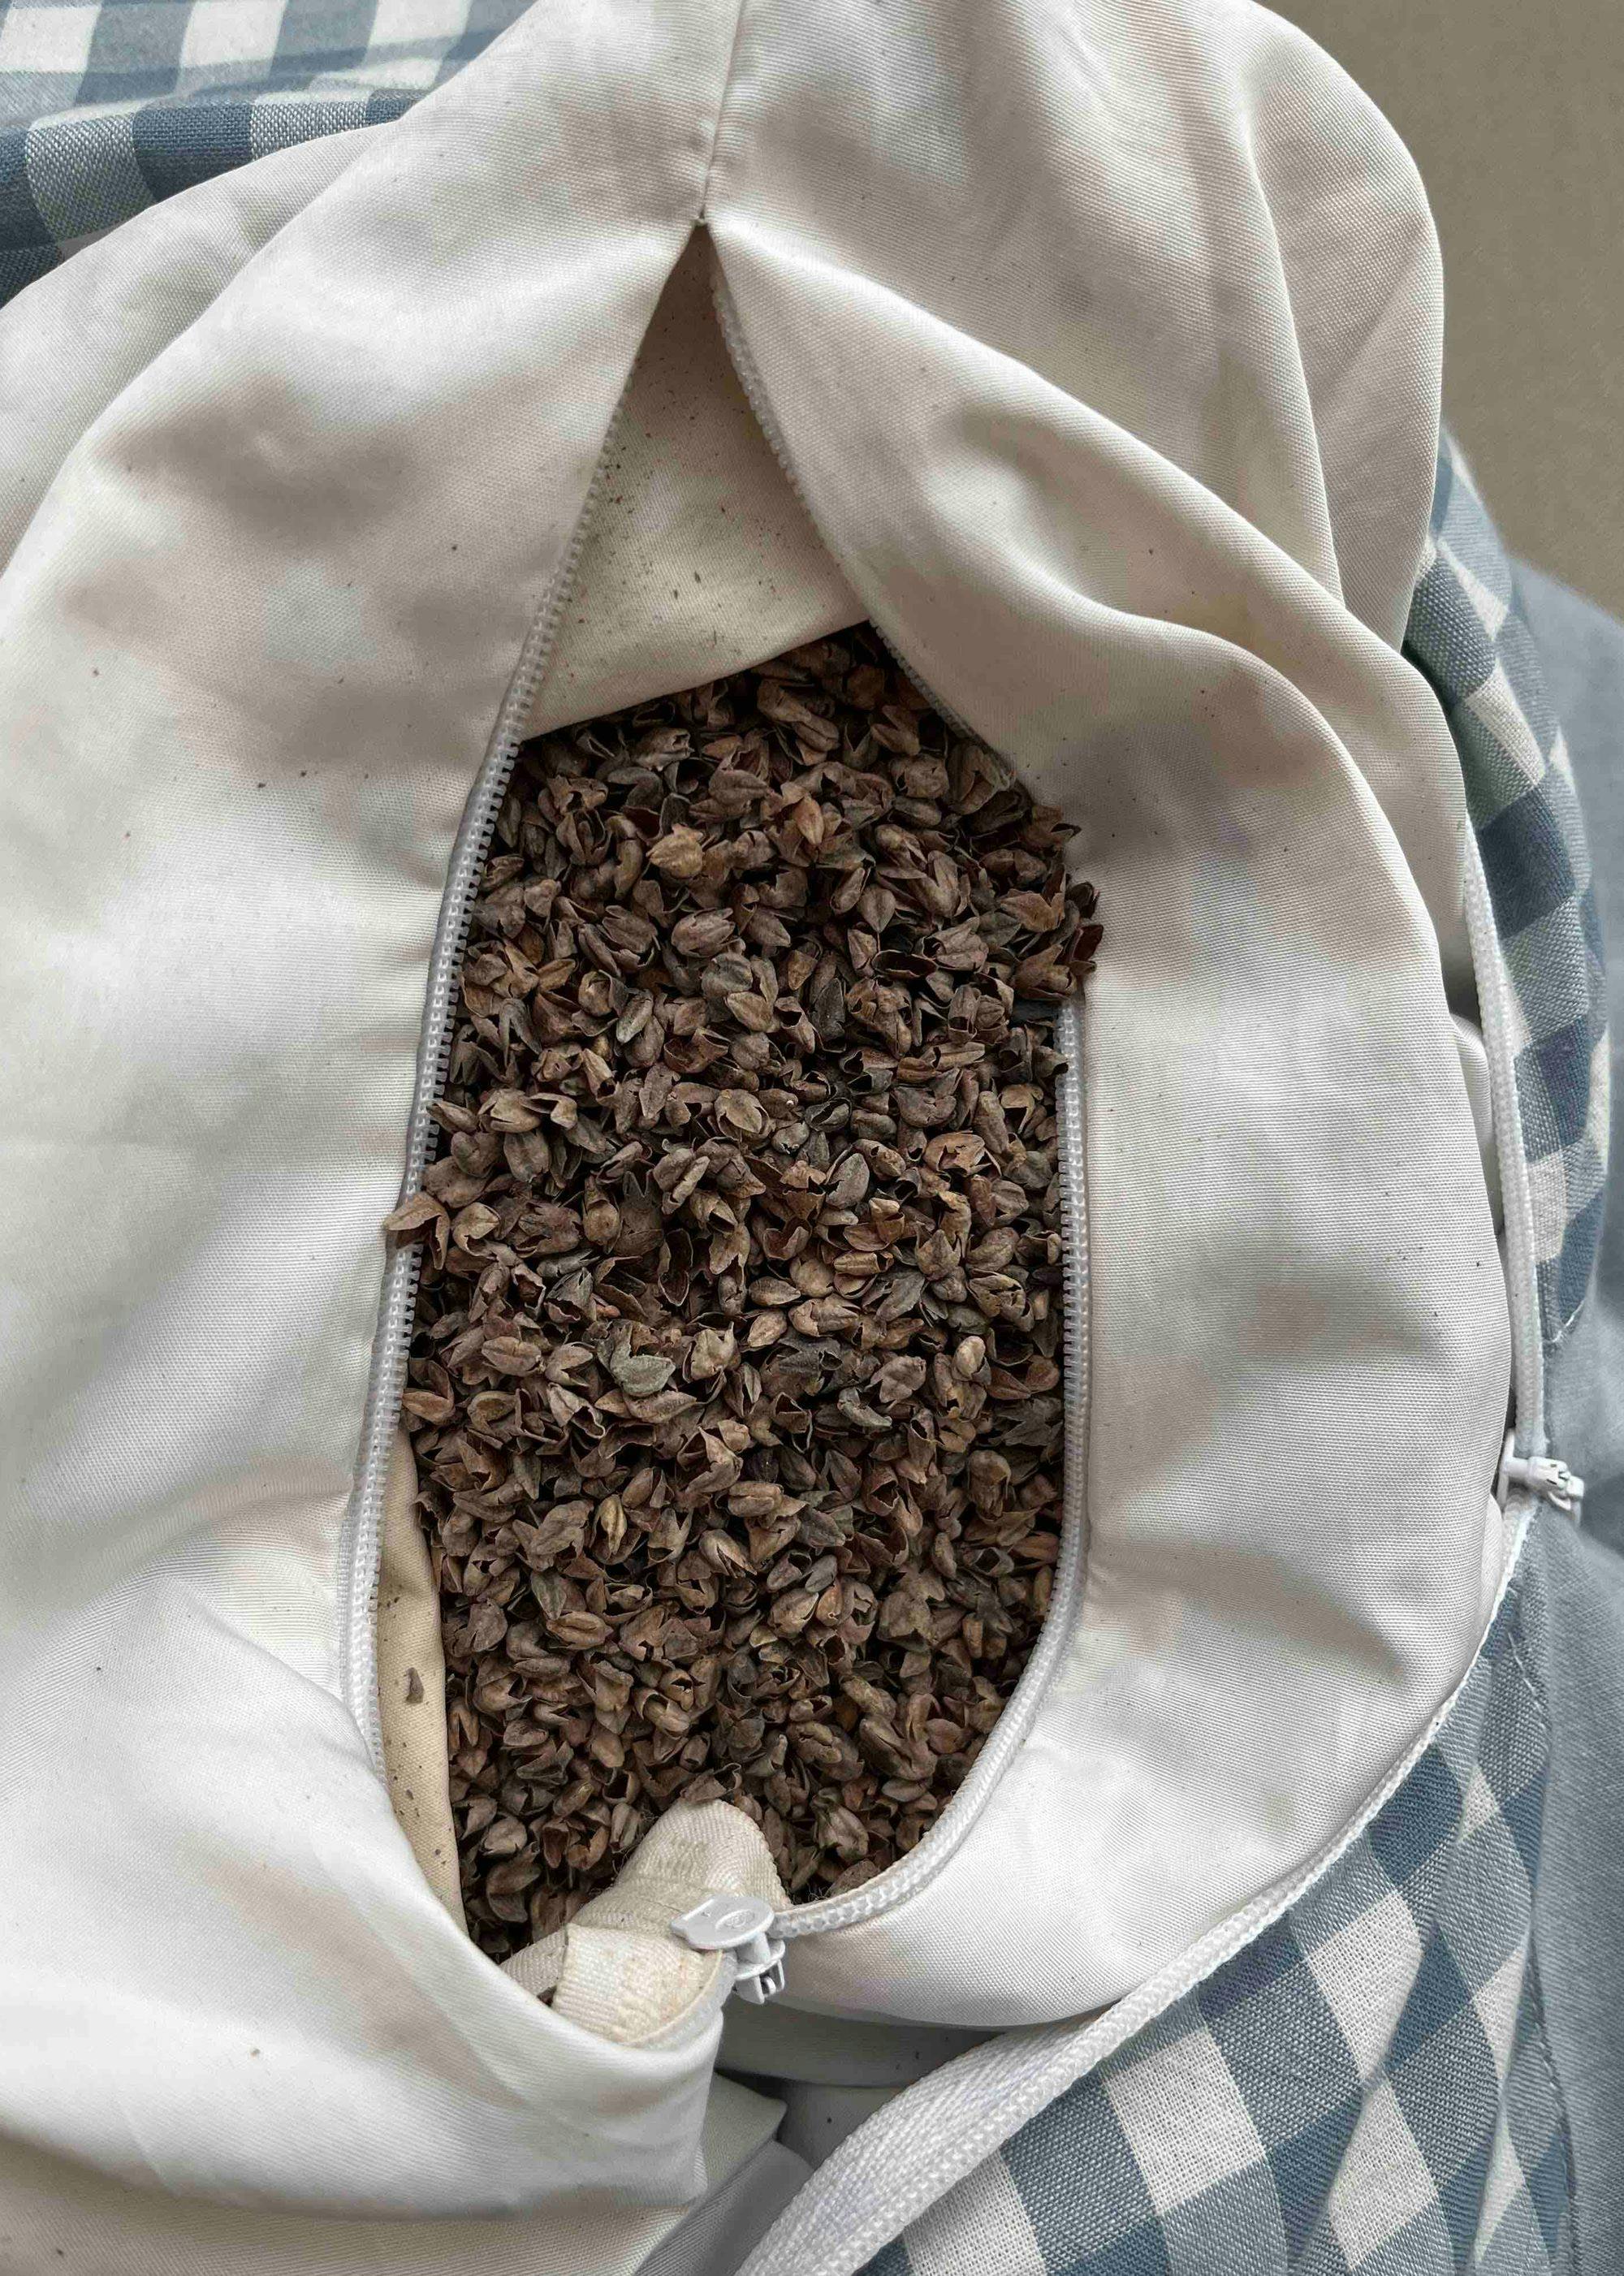 Buckwheat hulls inside a pillow